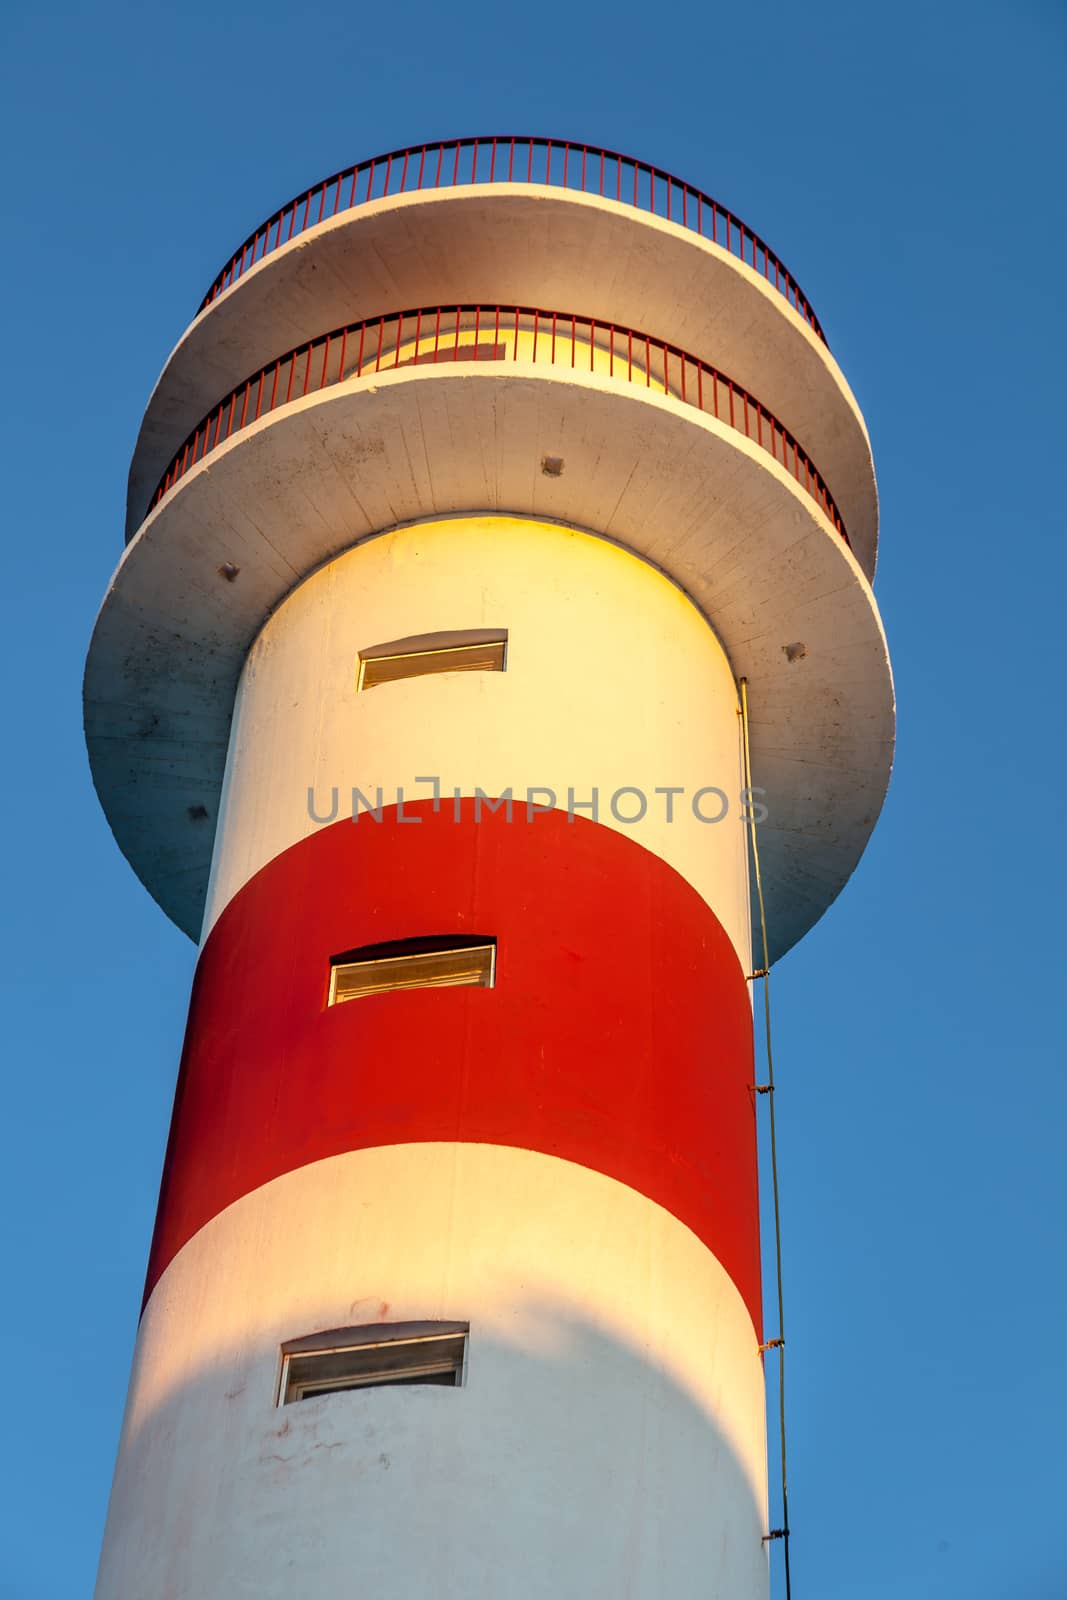 New lighthouse in Rota, Cadiz, Spain